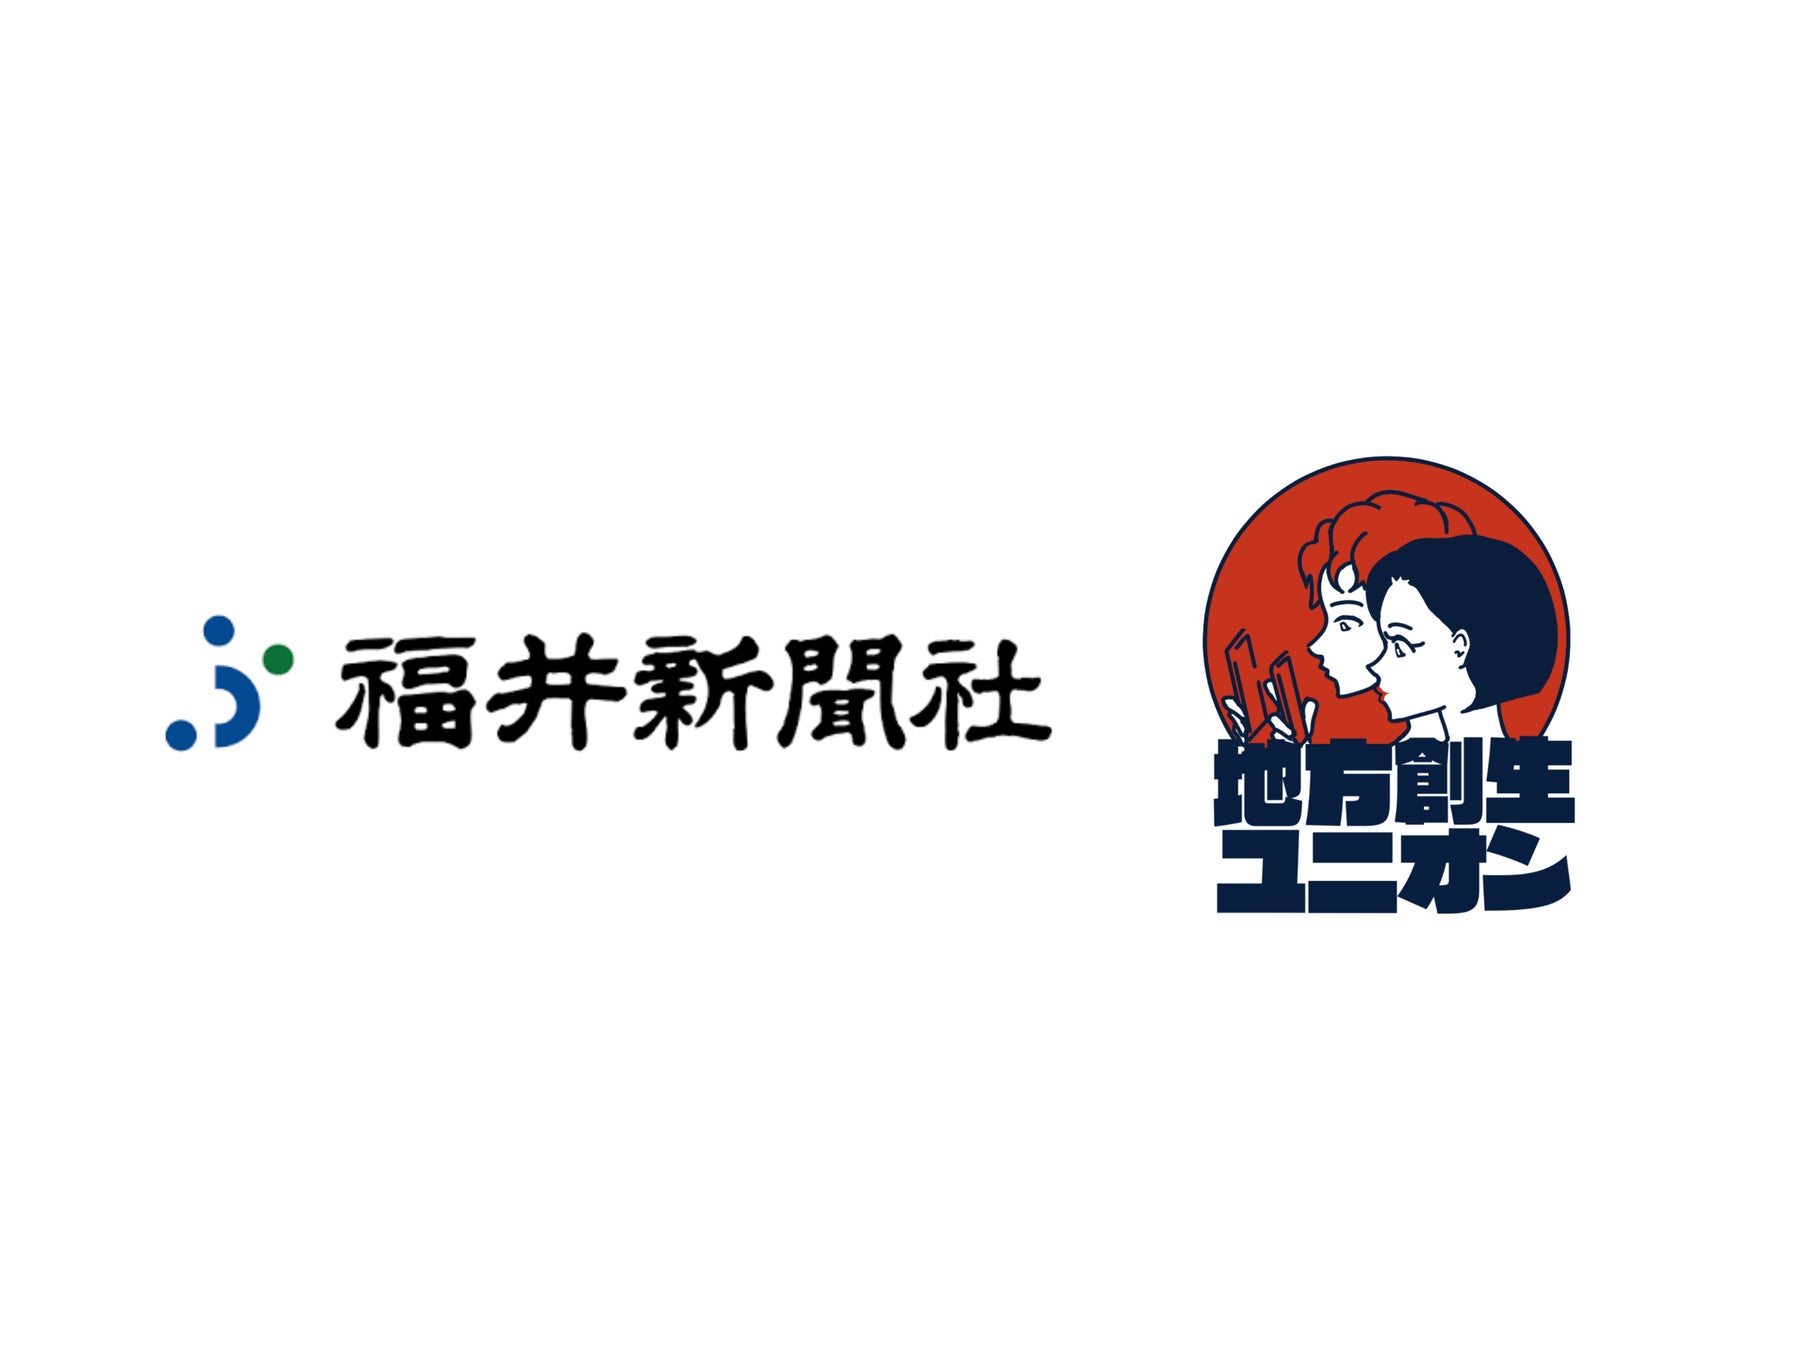 「地方創生ユニオン」と「福井新聞社」がサイクルイベント『ツール・ド・ふくい』の大会プロモーションで連携。